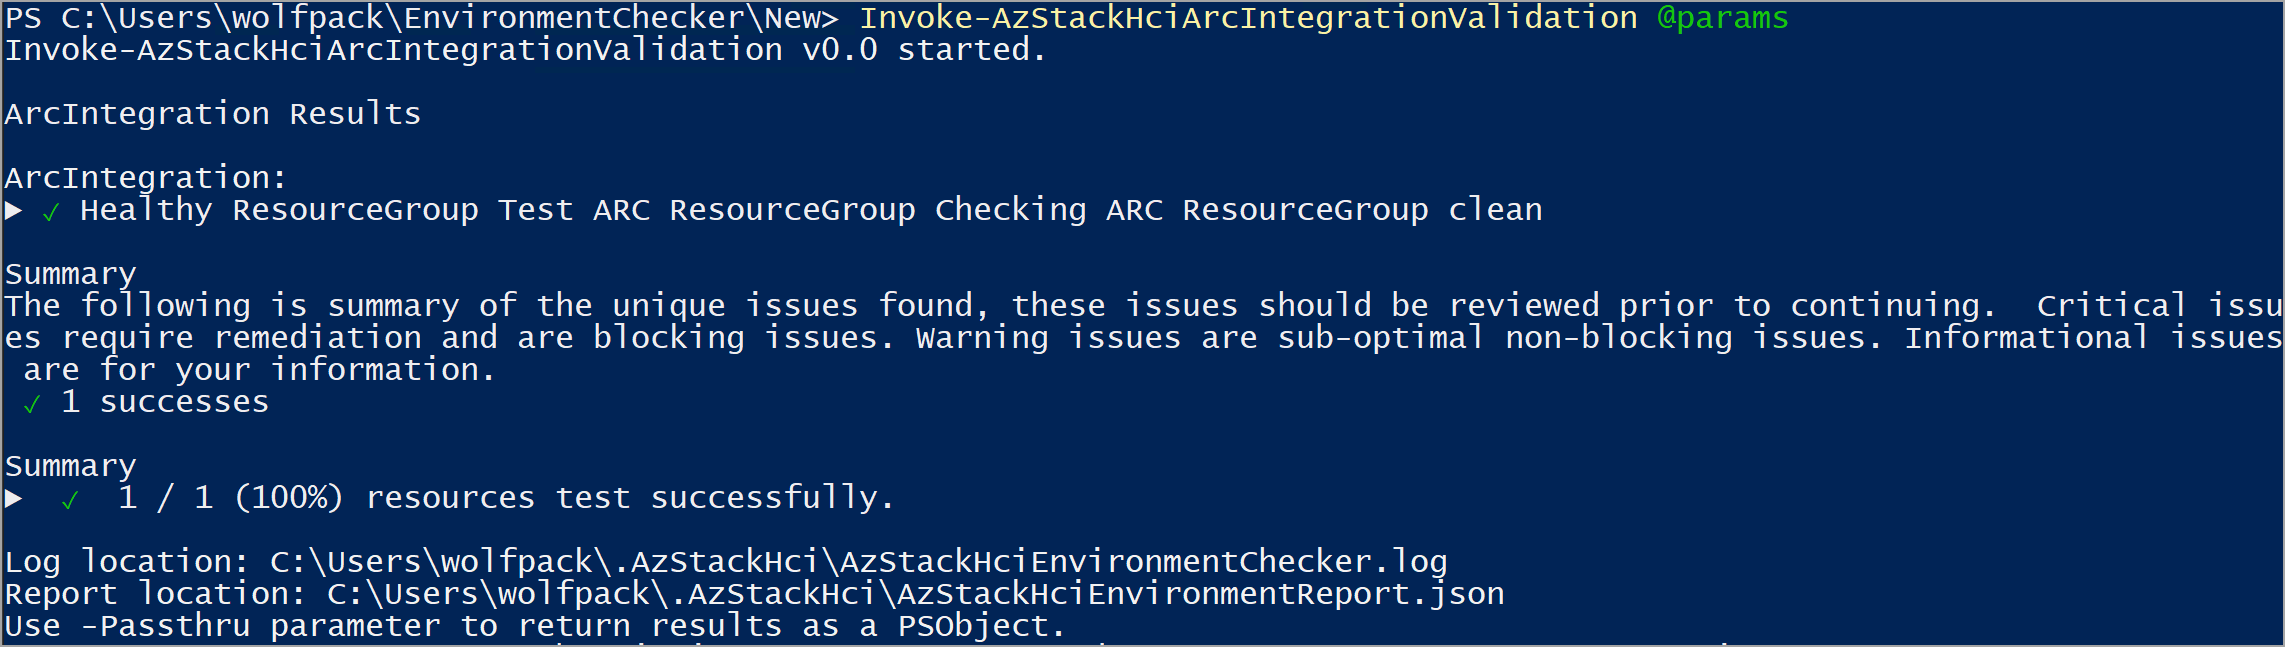 Screenshot di un report passato dopo l'esecuzione del validator di integrazione arc.